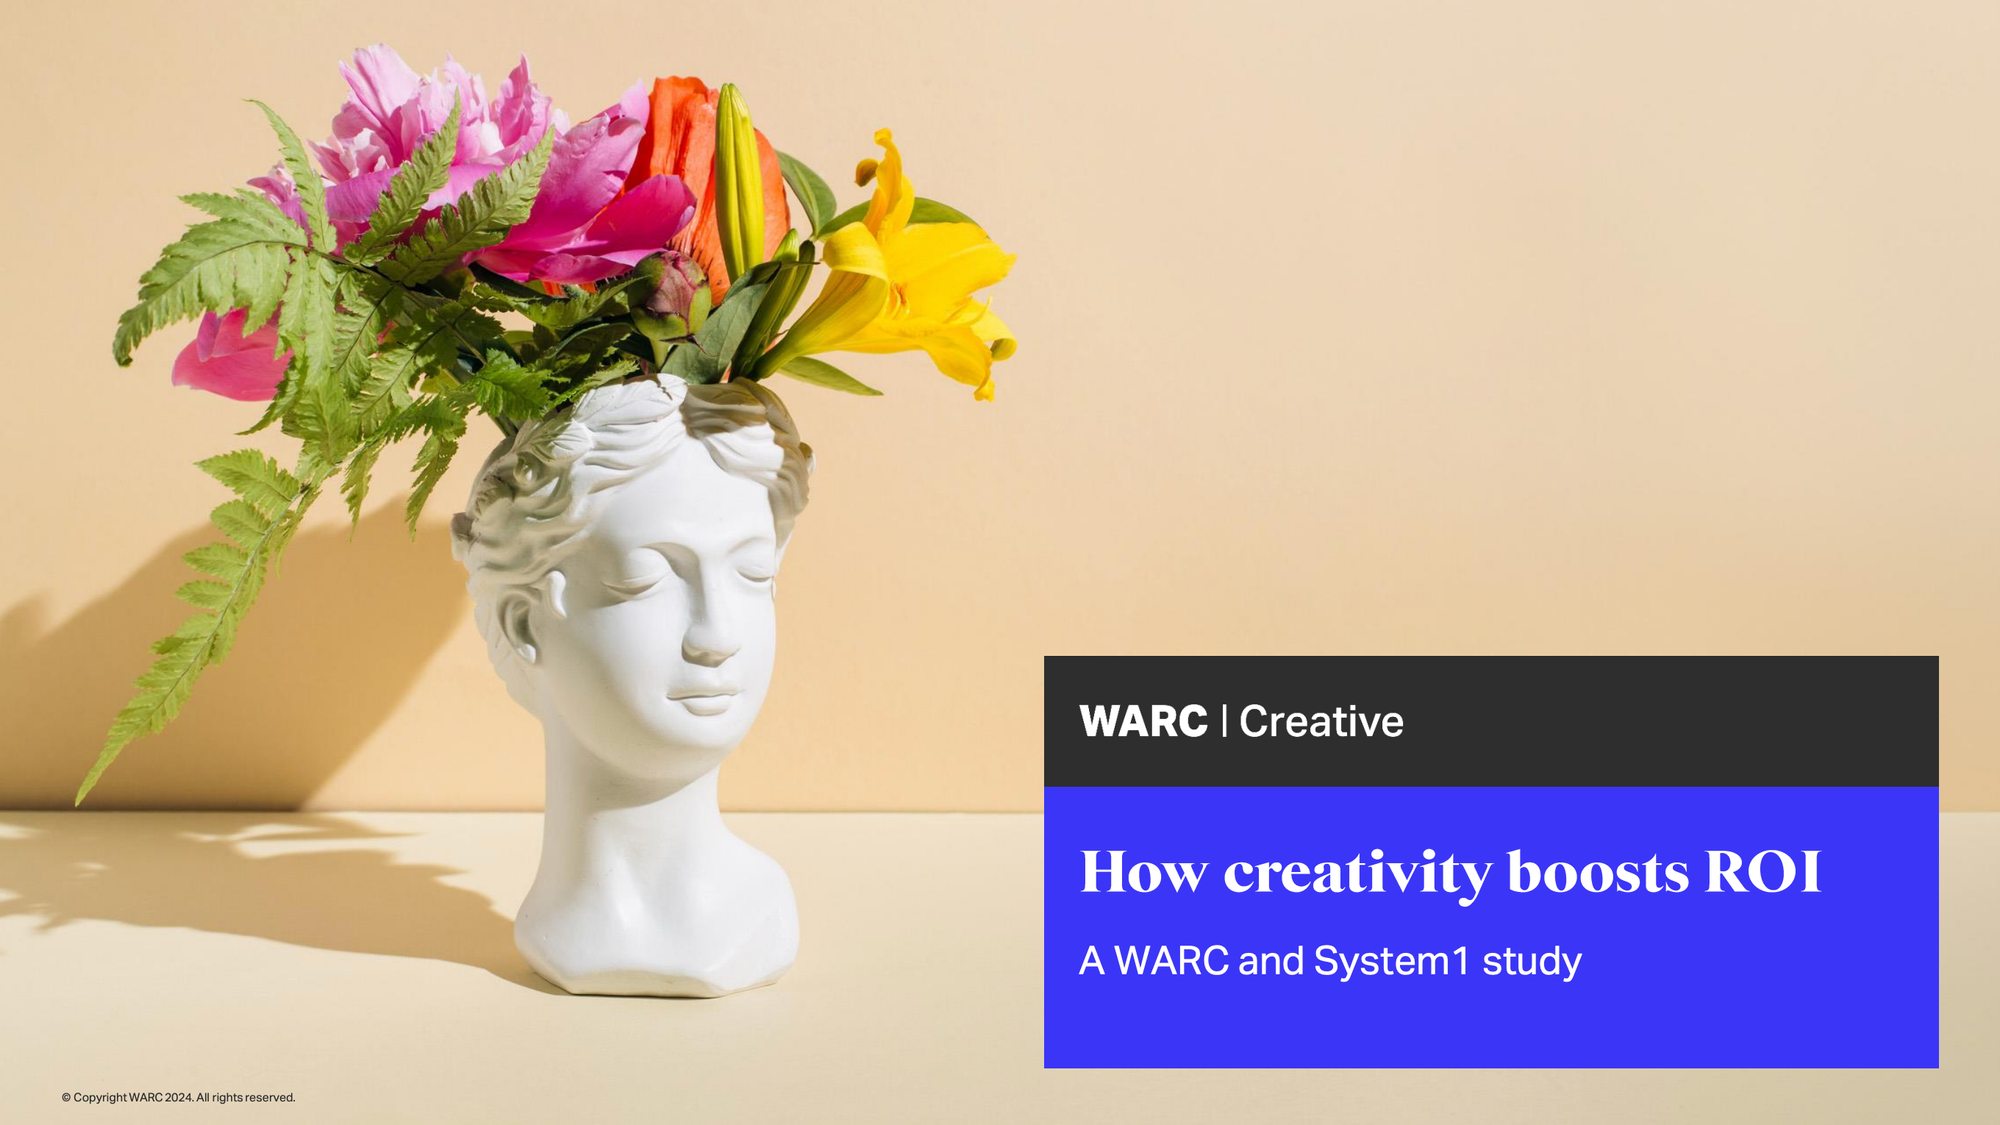 Warc creativity boosts ROI